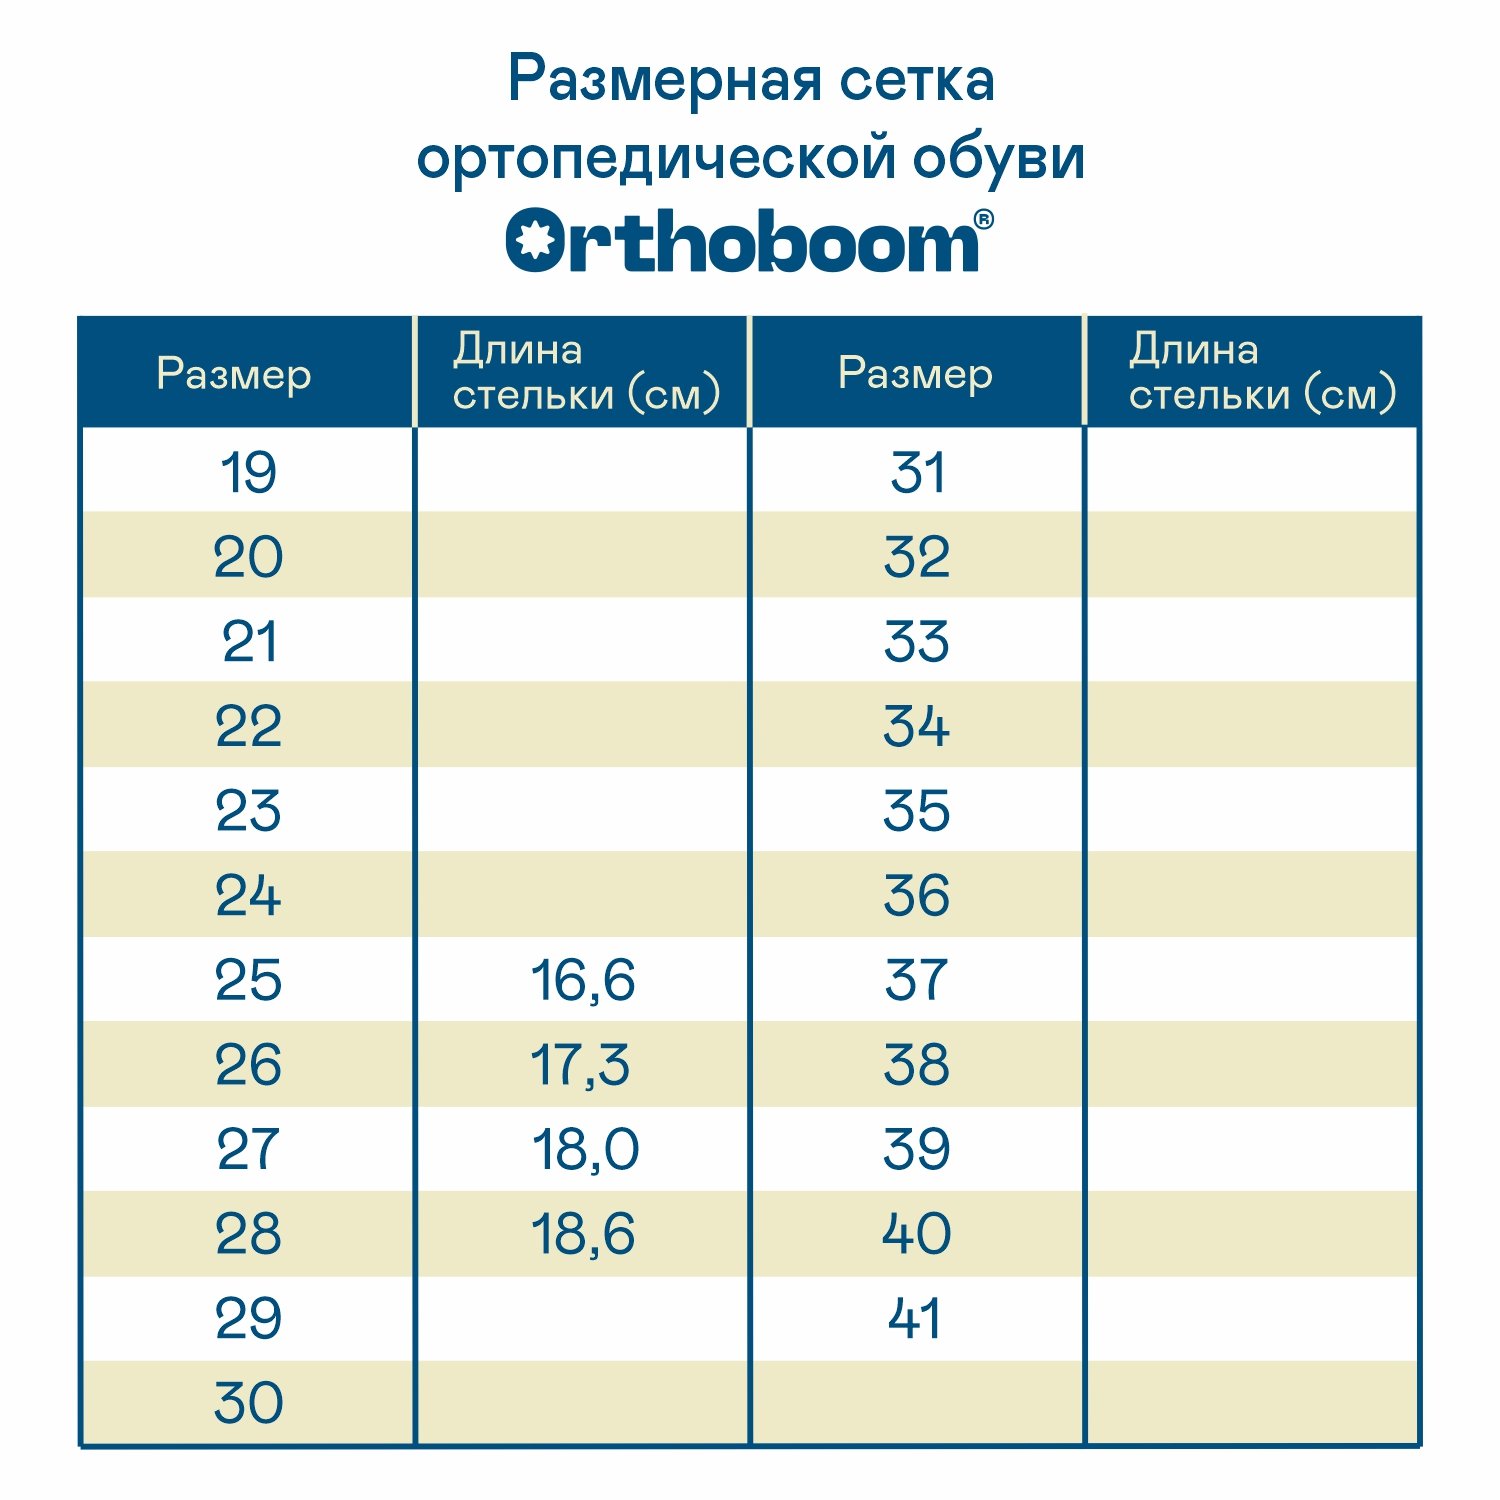 Детские полусапожки ORTHOBOOM 61423-03 глубокий синий